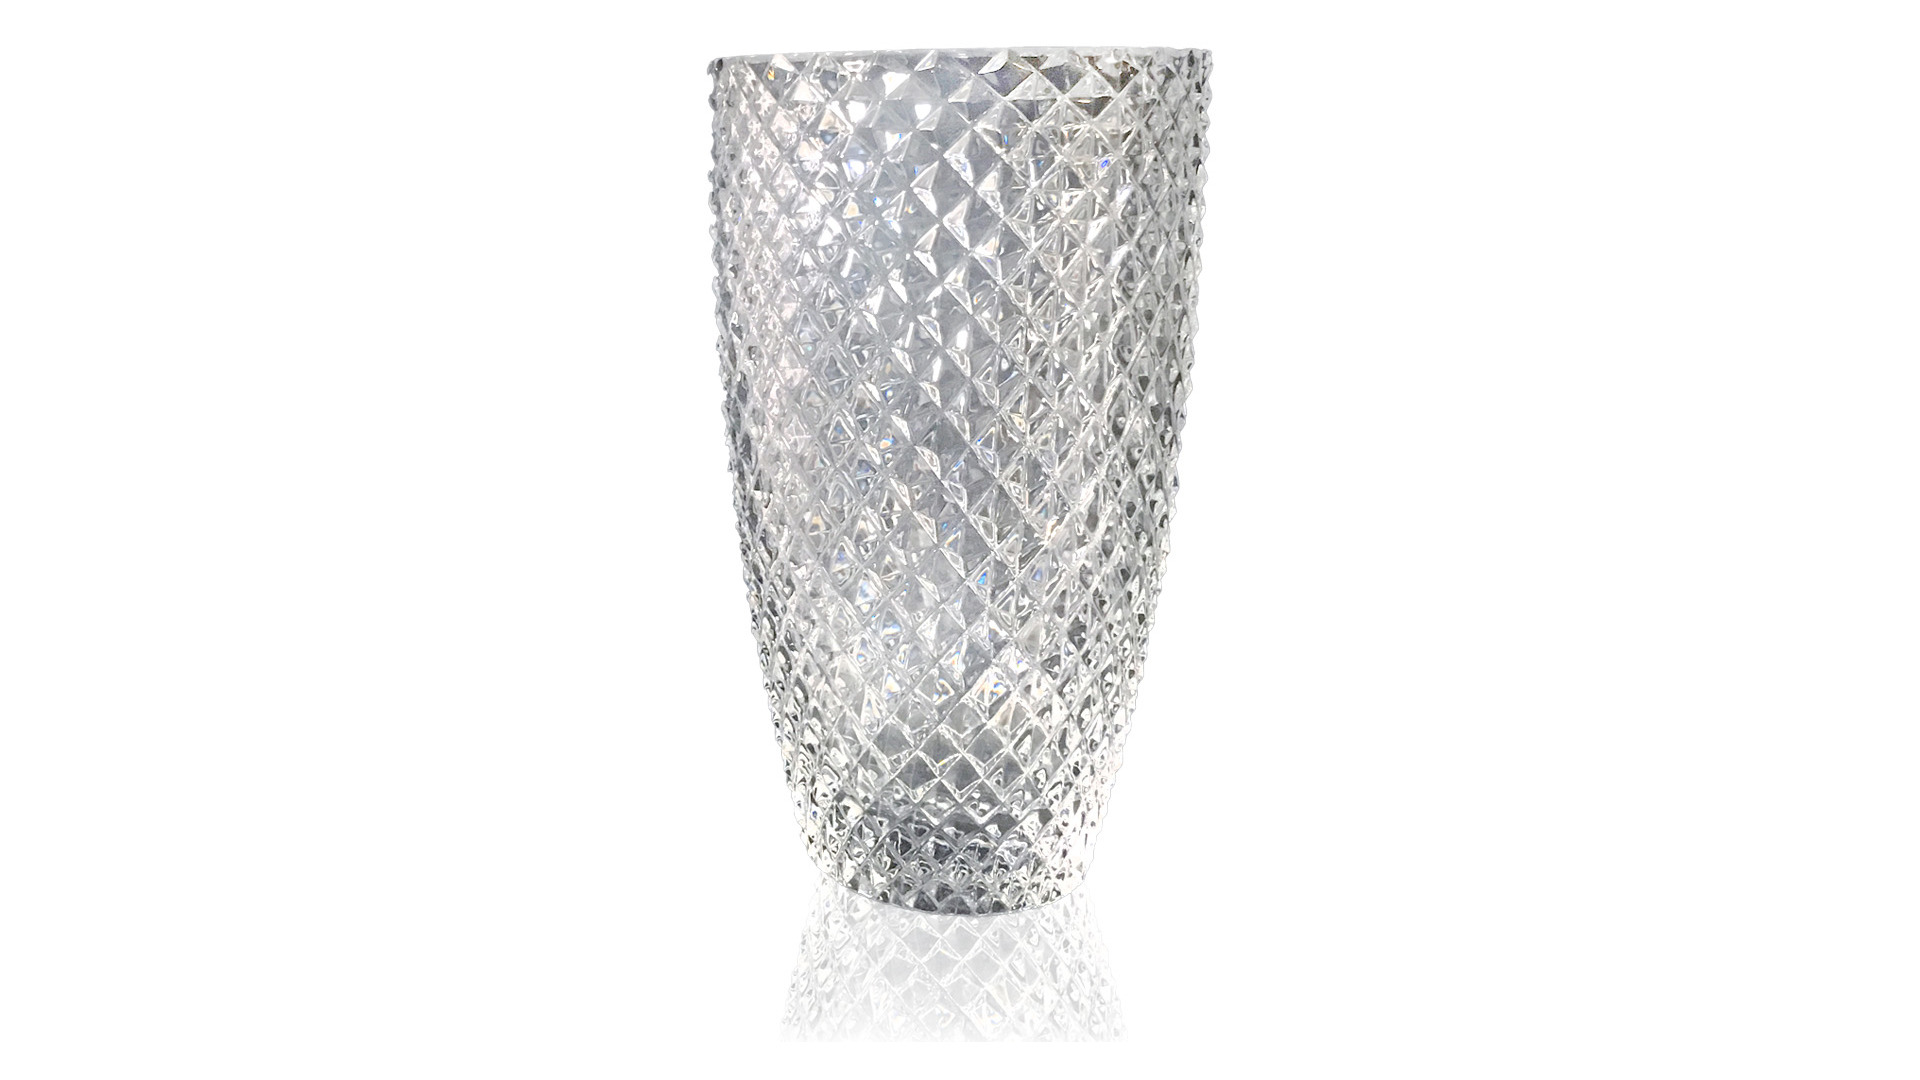 Ваза Cristal de Paris Диамант 25 см, прозрачная